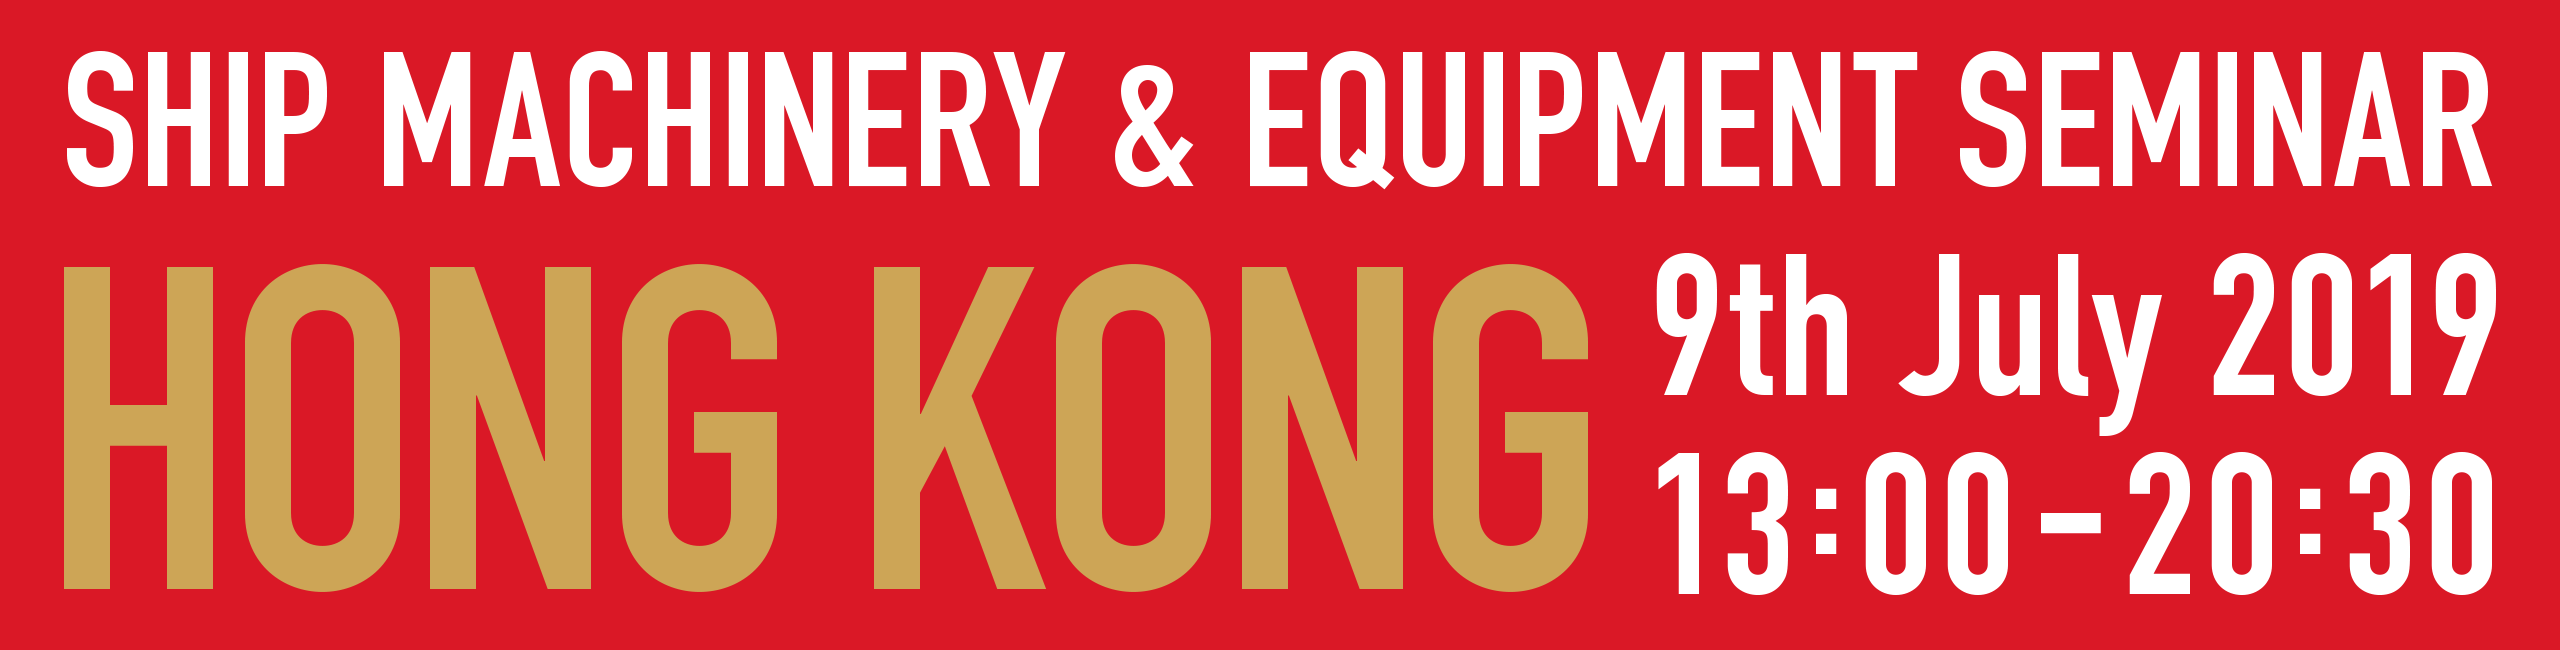 Ship Machinery & Equipment Seminar HONG KONG 9th July 2019 13:00-20:30